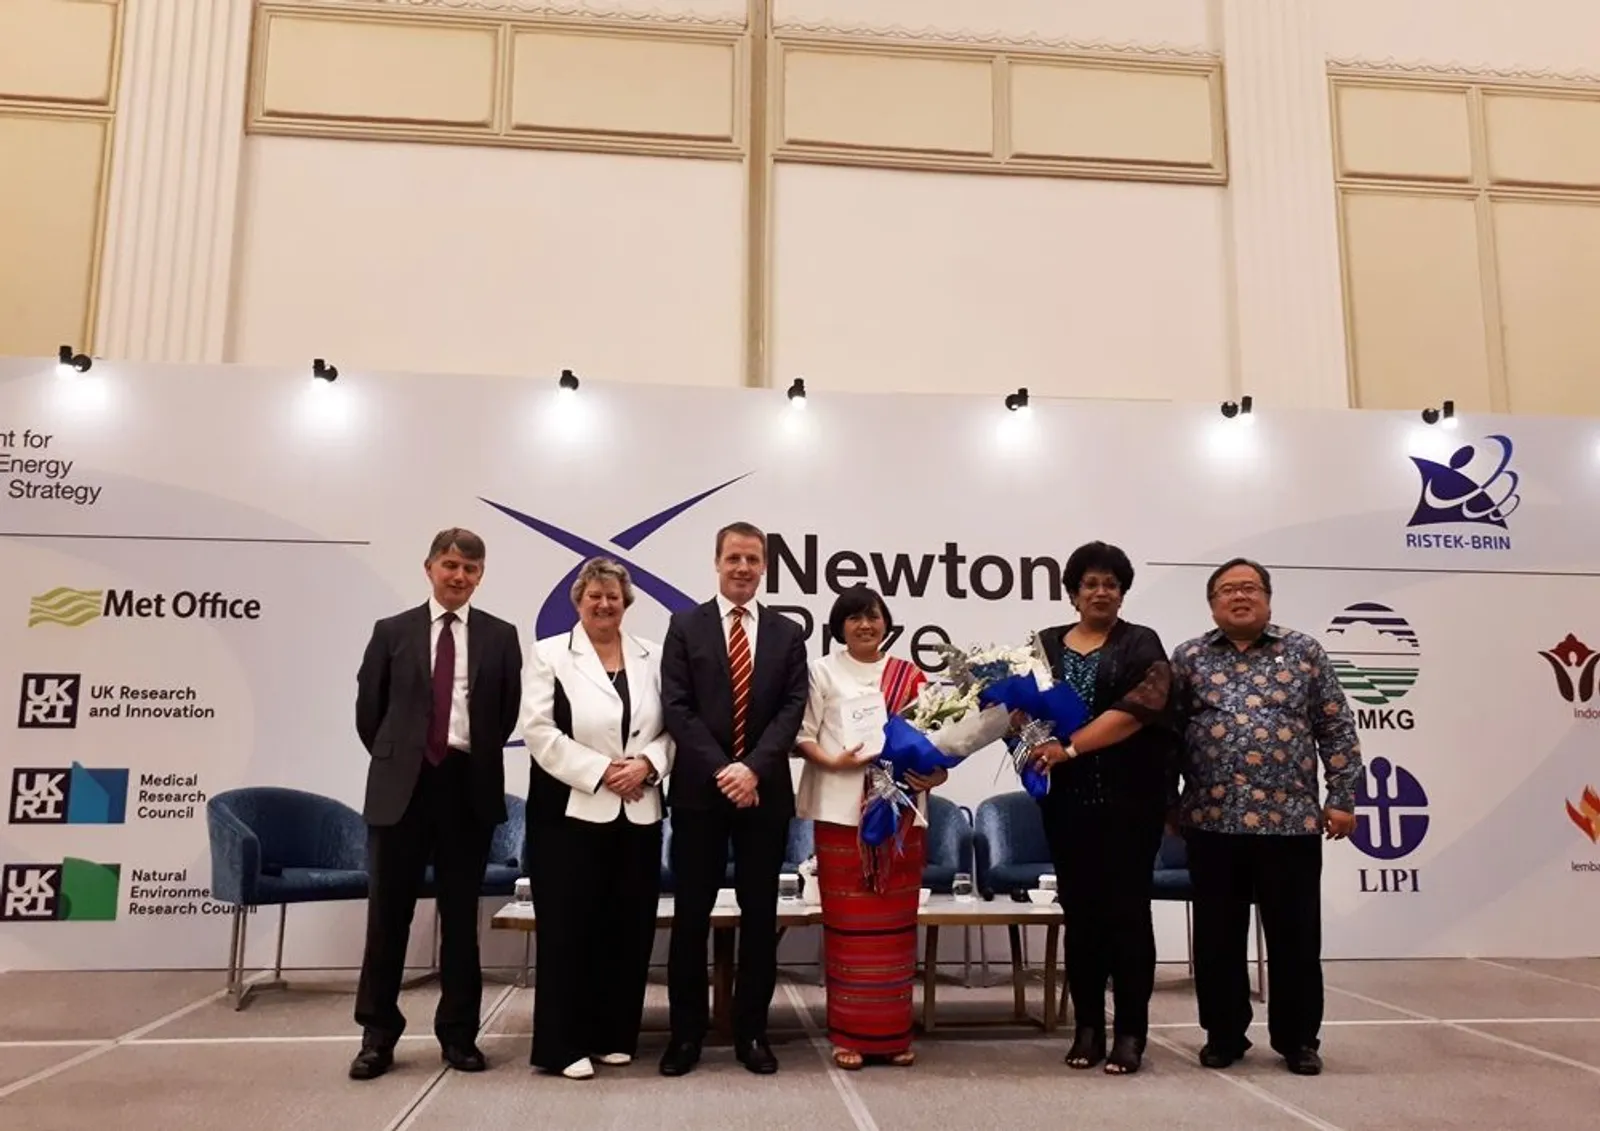 Bangga! Riset Dr Harkunti Rahayu Berhasil Menangkan Newton Prize 2019